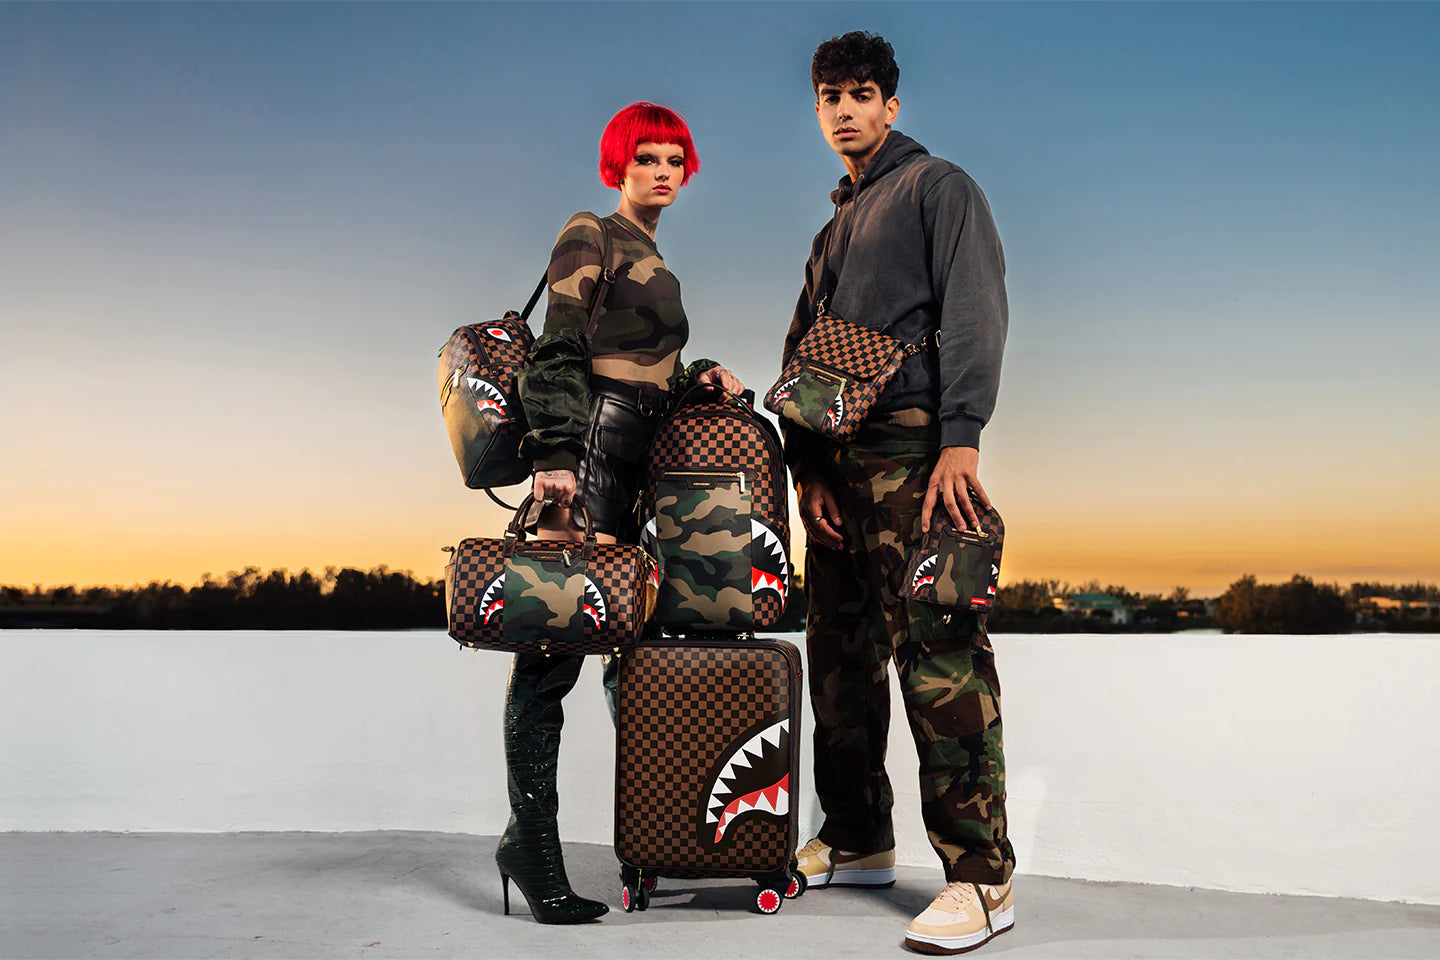 Sprayground 20/20 Vision Shark Backpack for Men